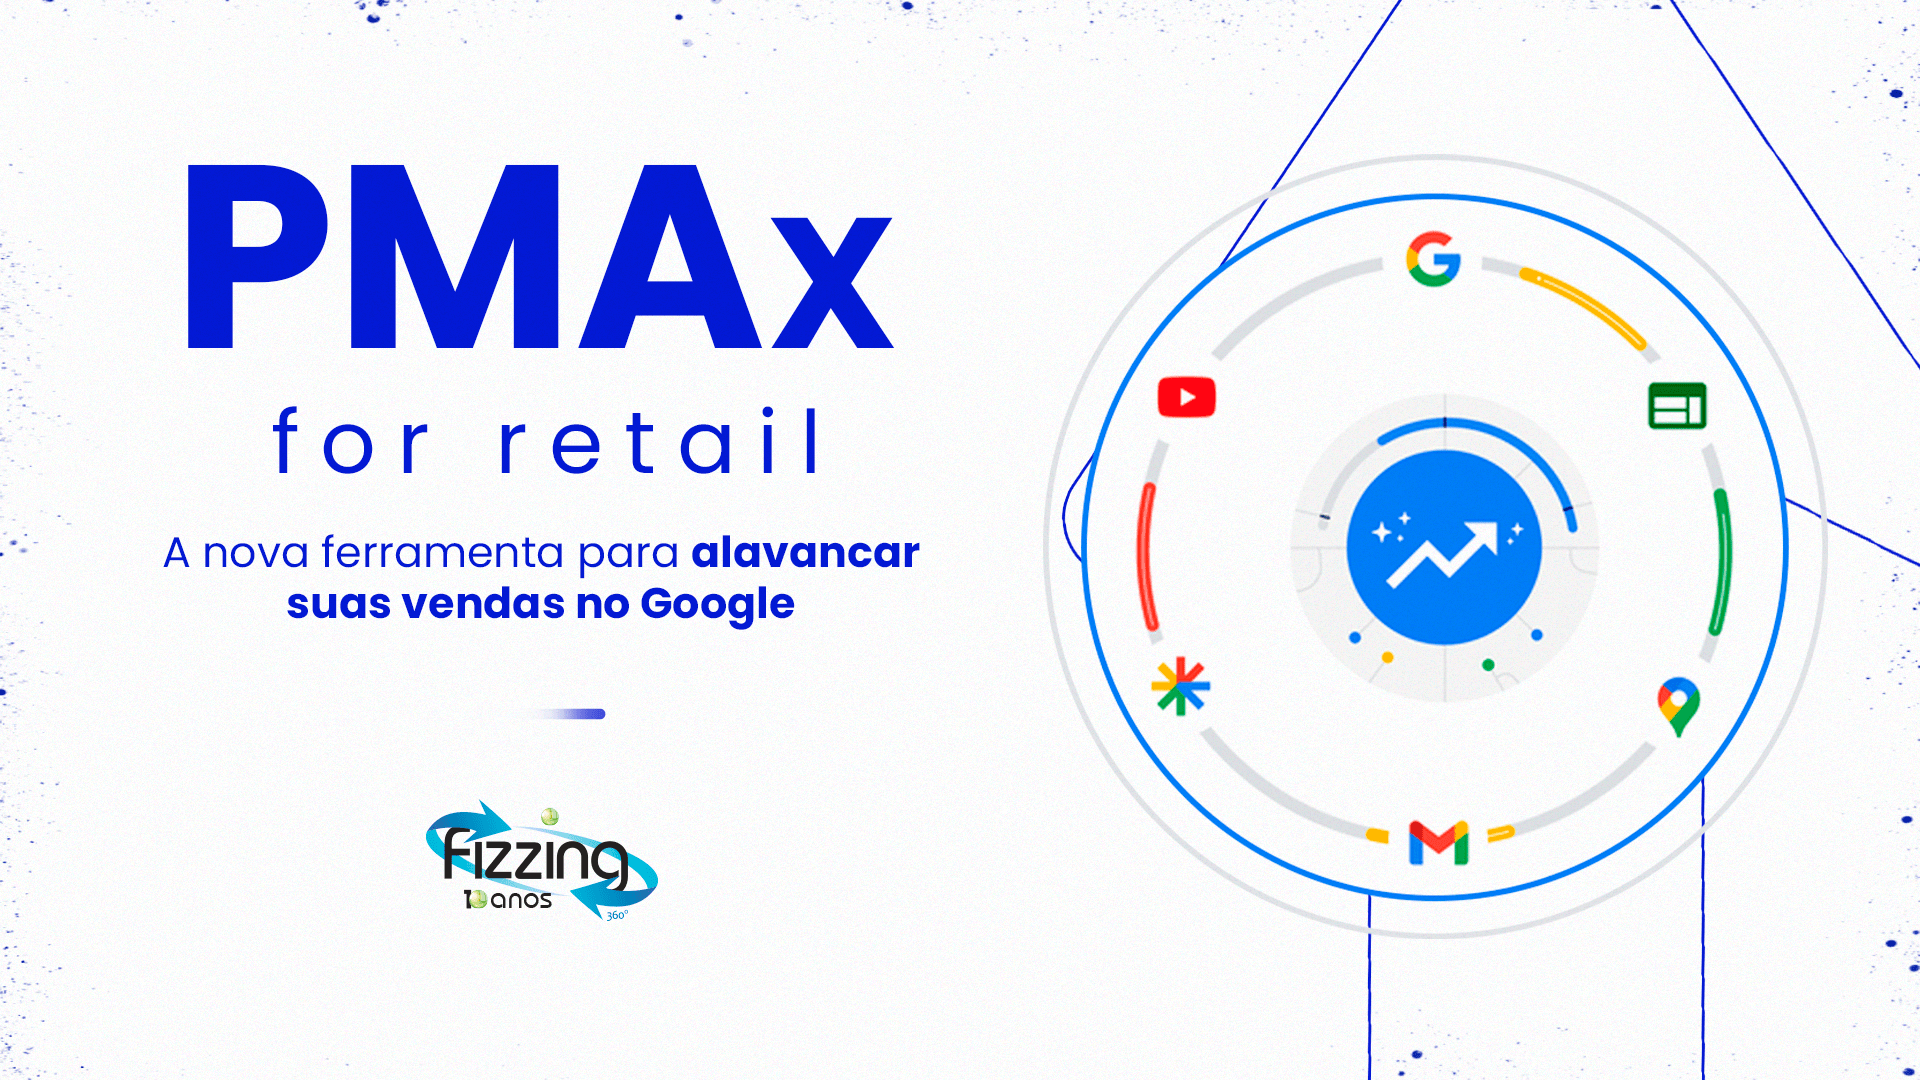 Ilustração com um círculo contendo logo do Google e de produtos da empresa, em volta de uma seta ascendente, com o seguinte texto do lado esquerdo: Pmax for Retail: a nova ferramenta para alavancar suas vendas no Google.